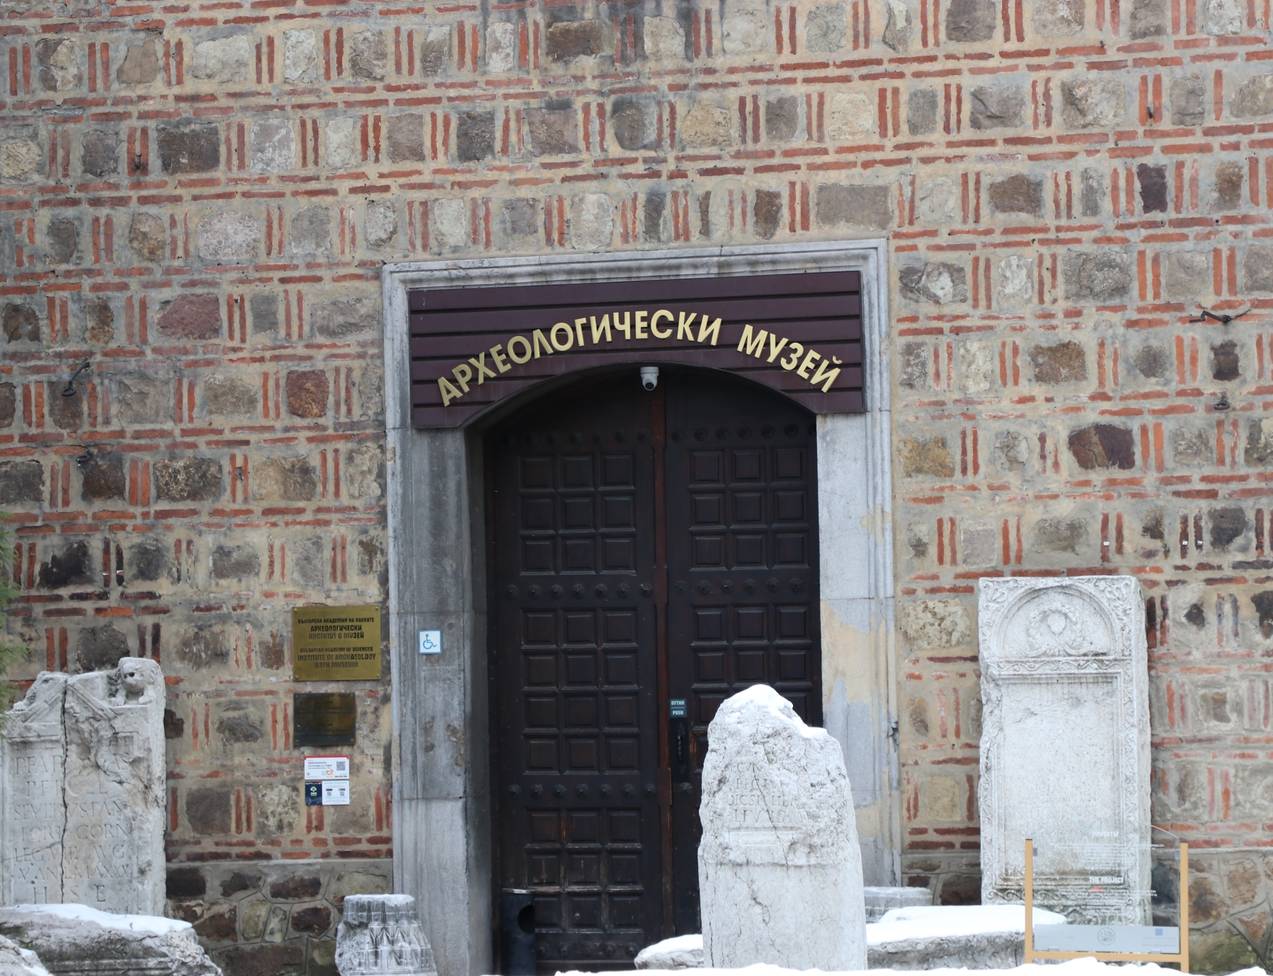  Археологически музей-София 